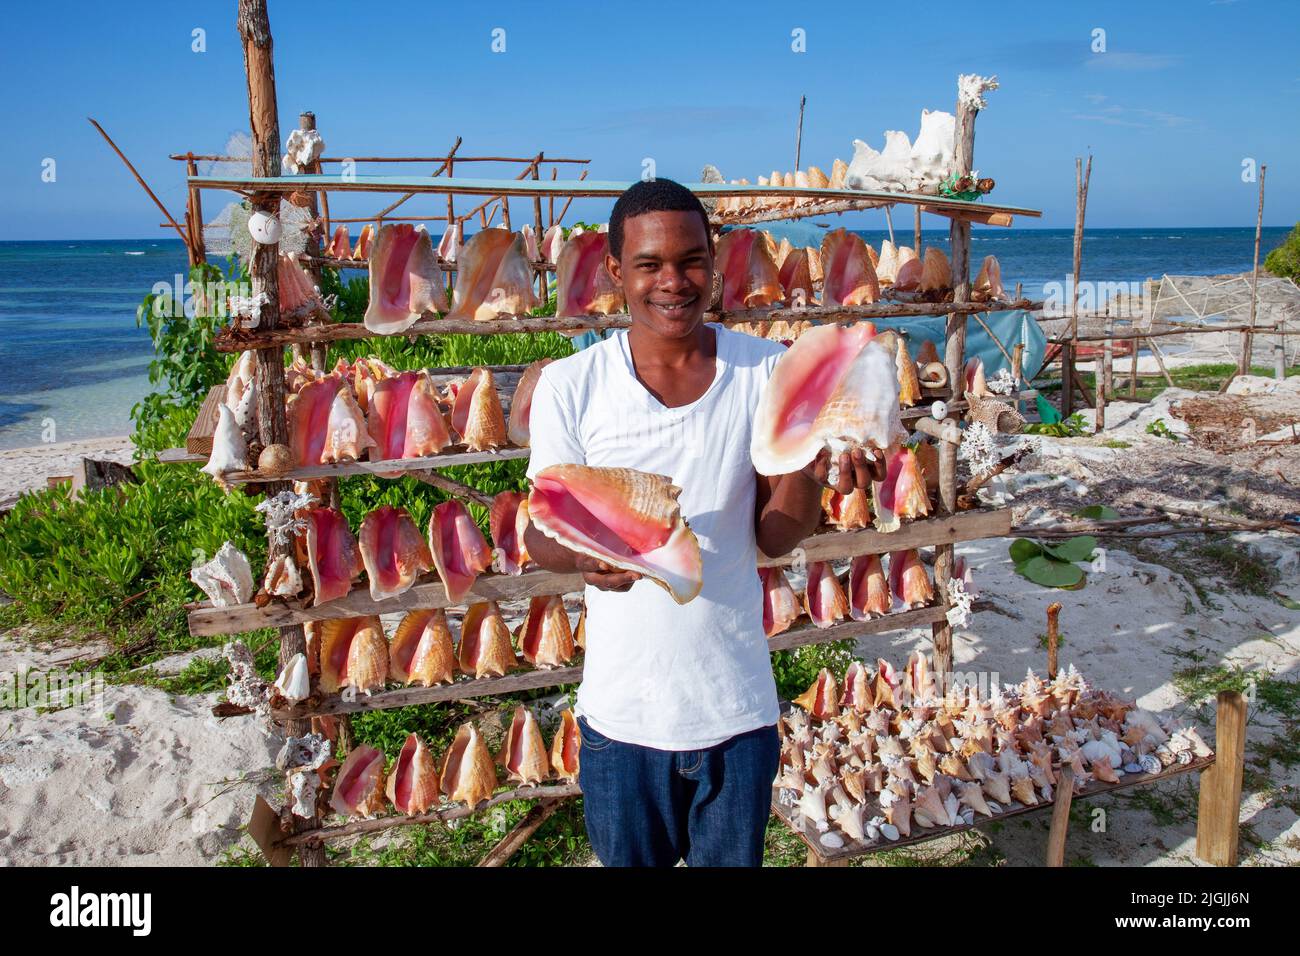 Giamaica, lungo la costa nord si può acquistare conchiglie come souvenir, ma è illegale importare questi in molti paesi. Foto Stock